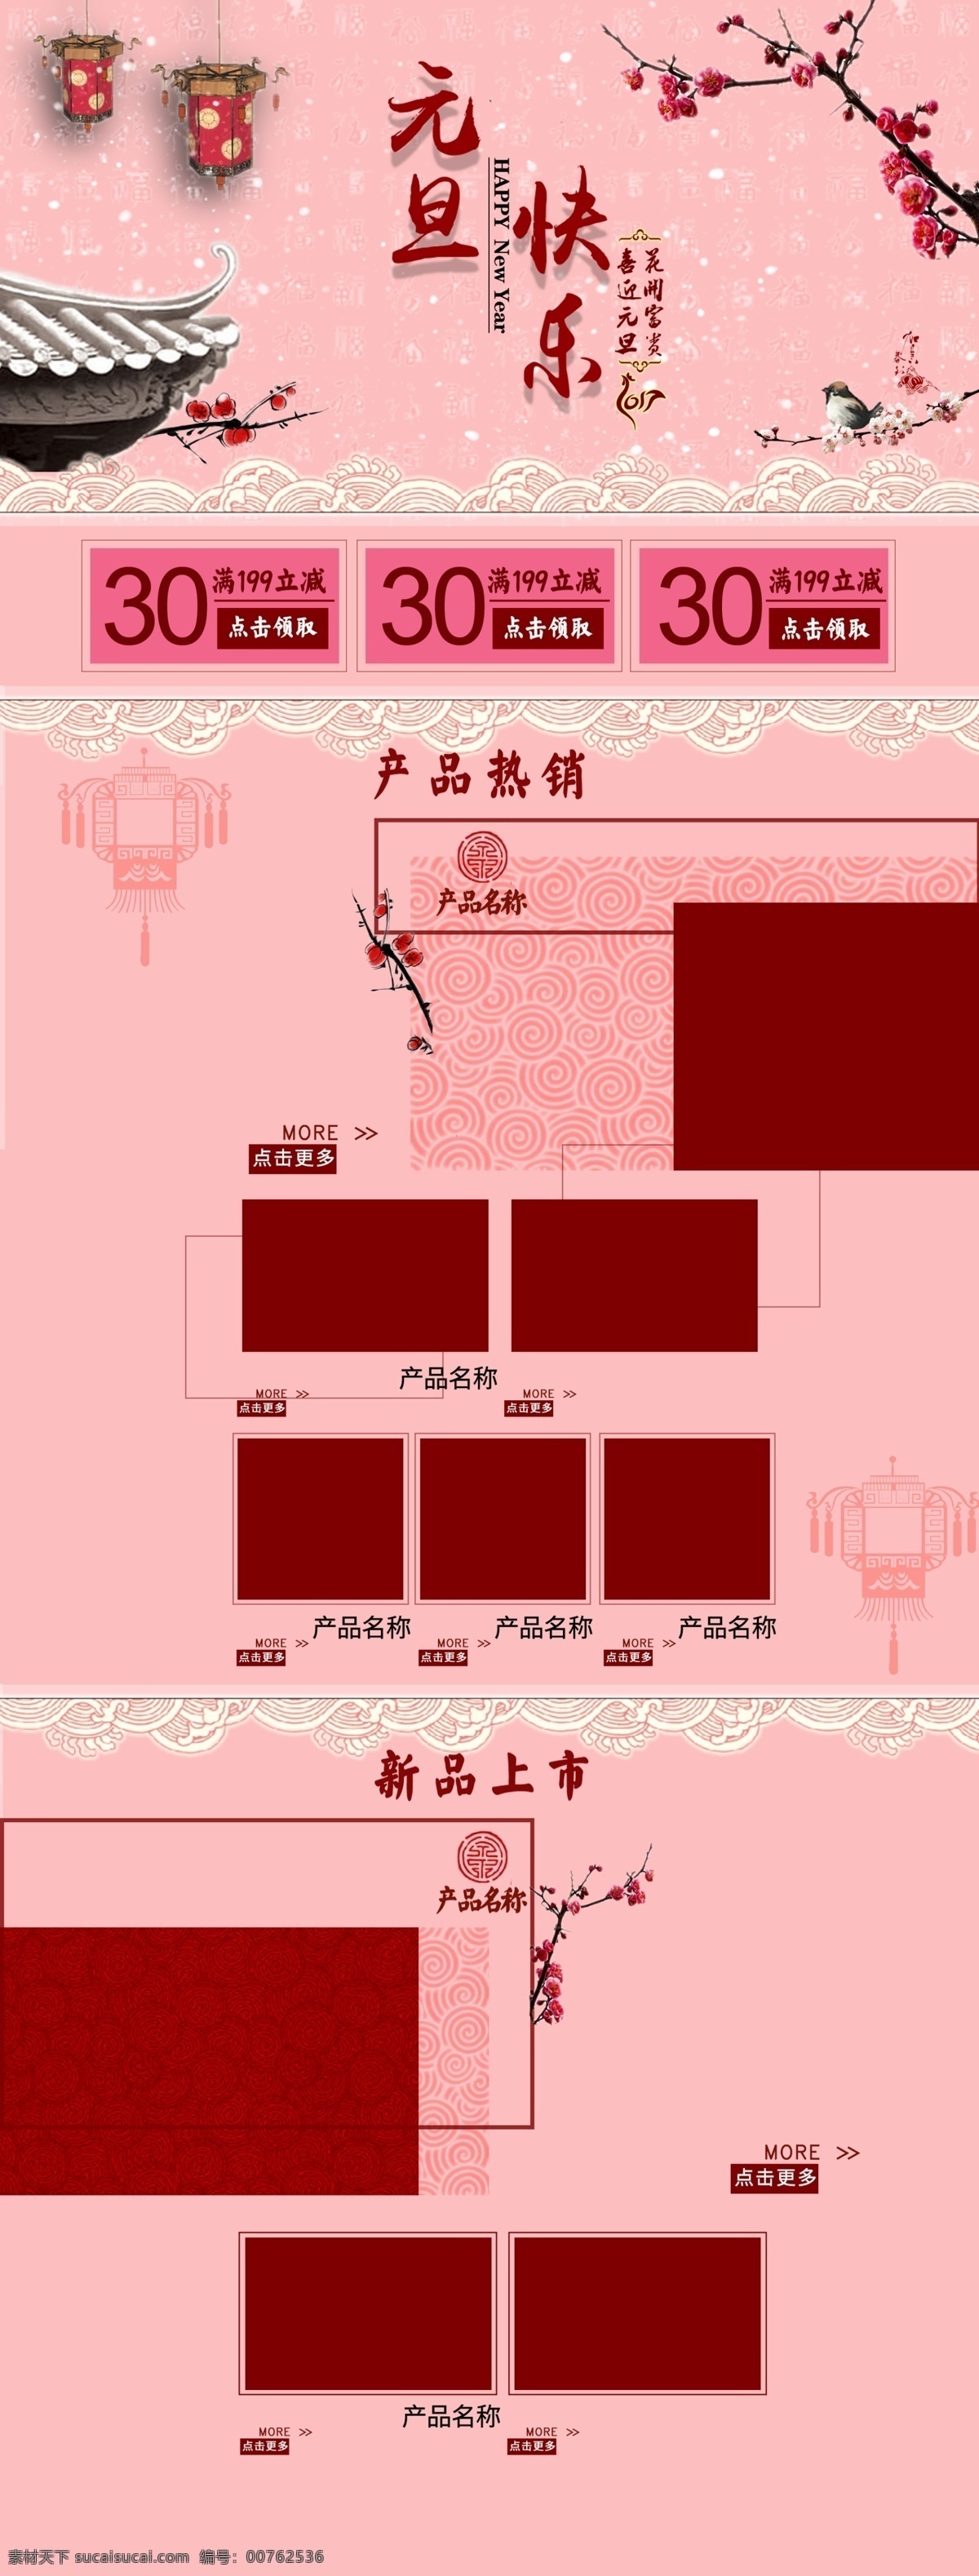 红色 粉色 中国 风 元旦 快乐 淘宝 电商 首页 古风 节日 腊梅 屋顶 喜庆 元旦快乐 中国风